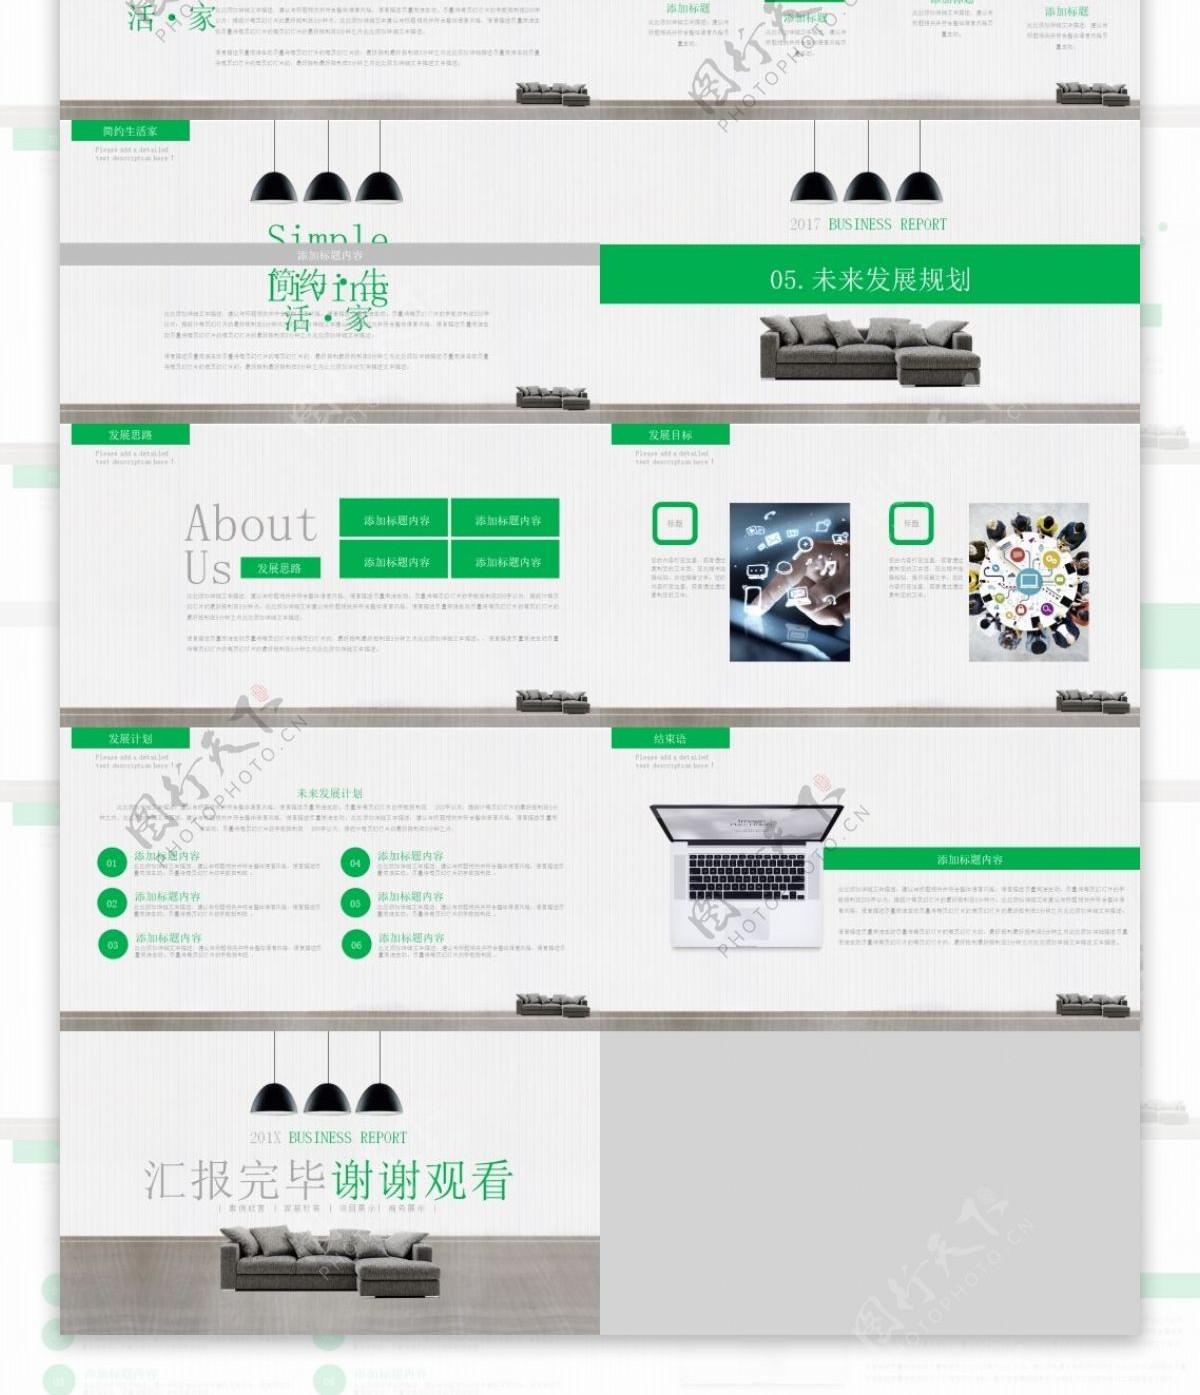 绿色小清新简约装饰公司介绍宣传PPT模板